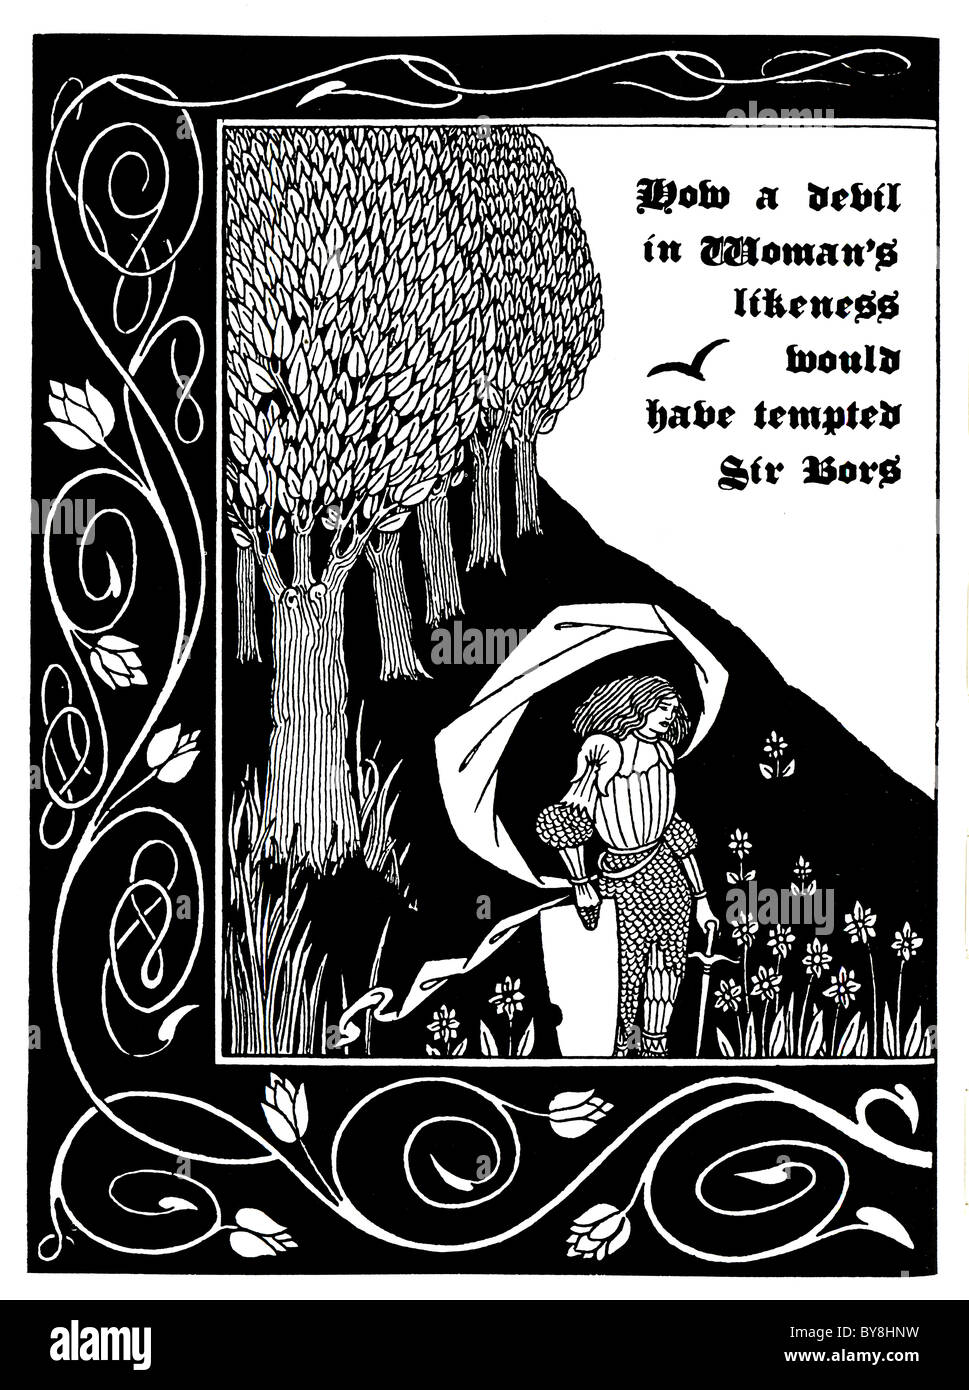 Aubrey Beardsley – der Tod von Arthur 1893 - Dent Publishing "Wie ein Teufel in Gestalt des Weibes Sir Bors versucht haben würde" Stockfoto